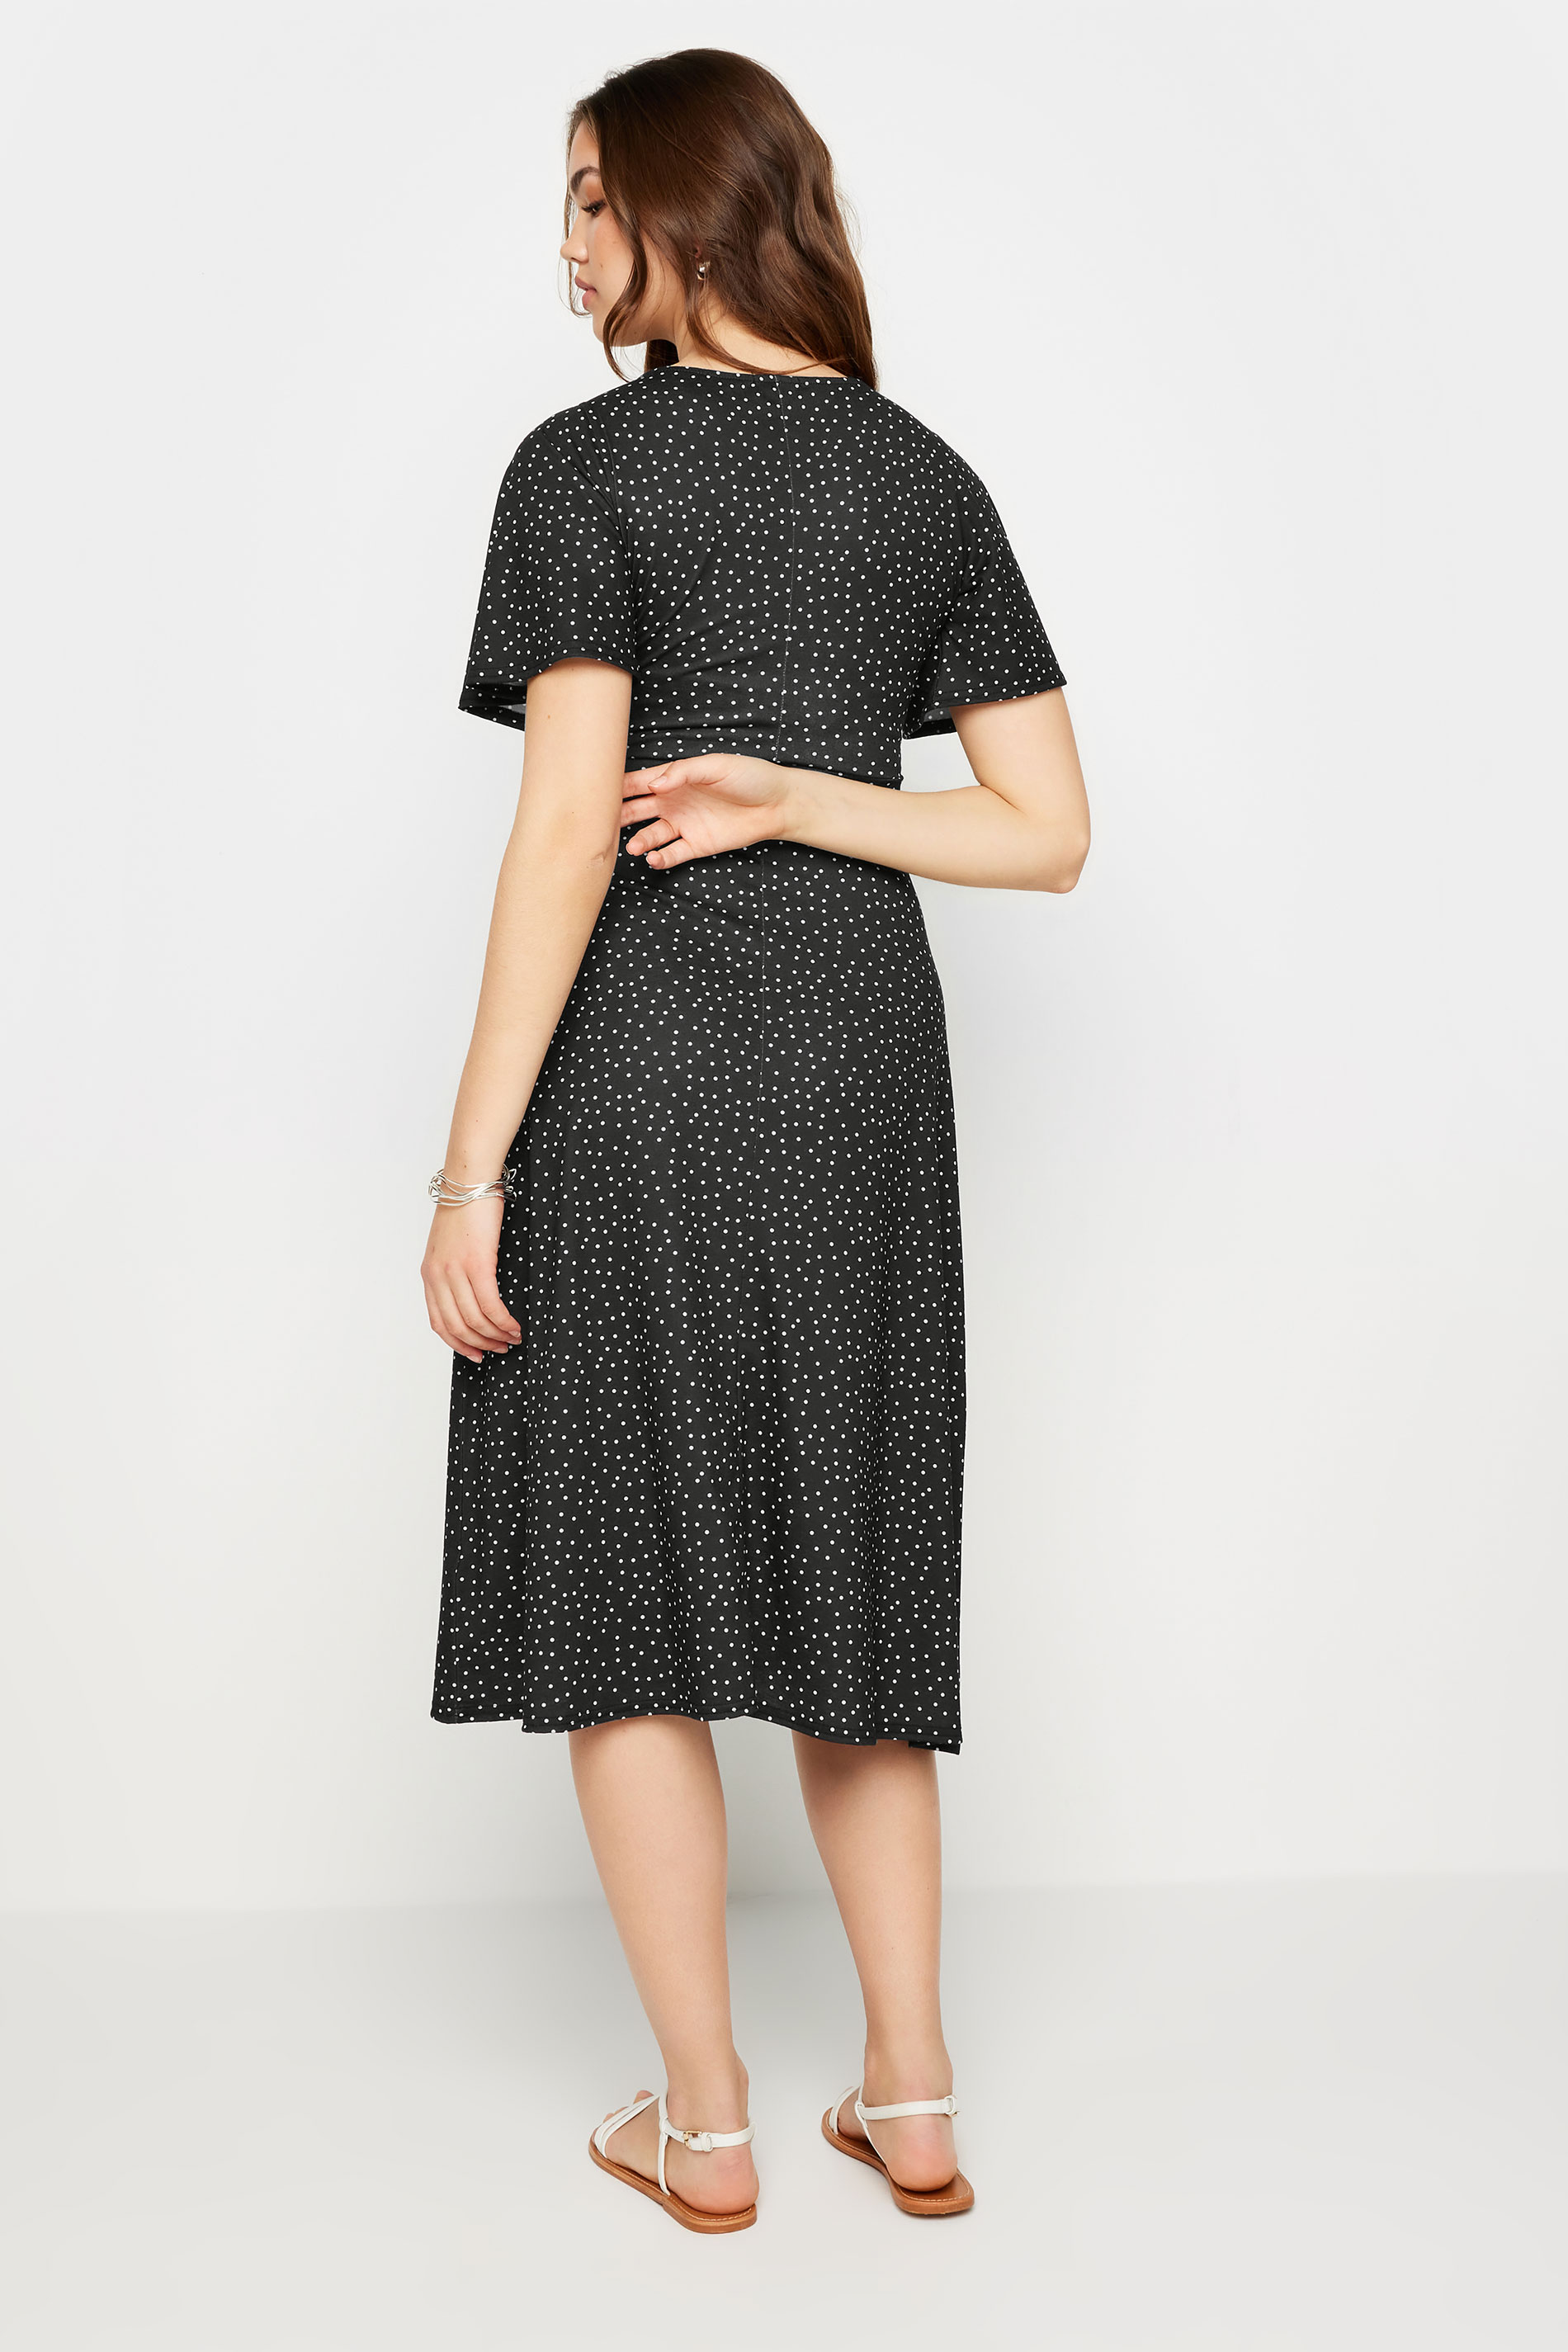 LTS Tall Women's Black Spot Print Midi Dress | Long Tall Sally 2